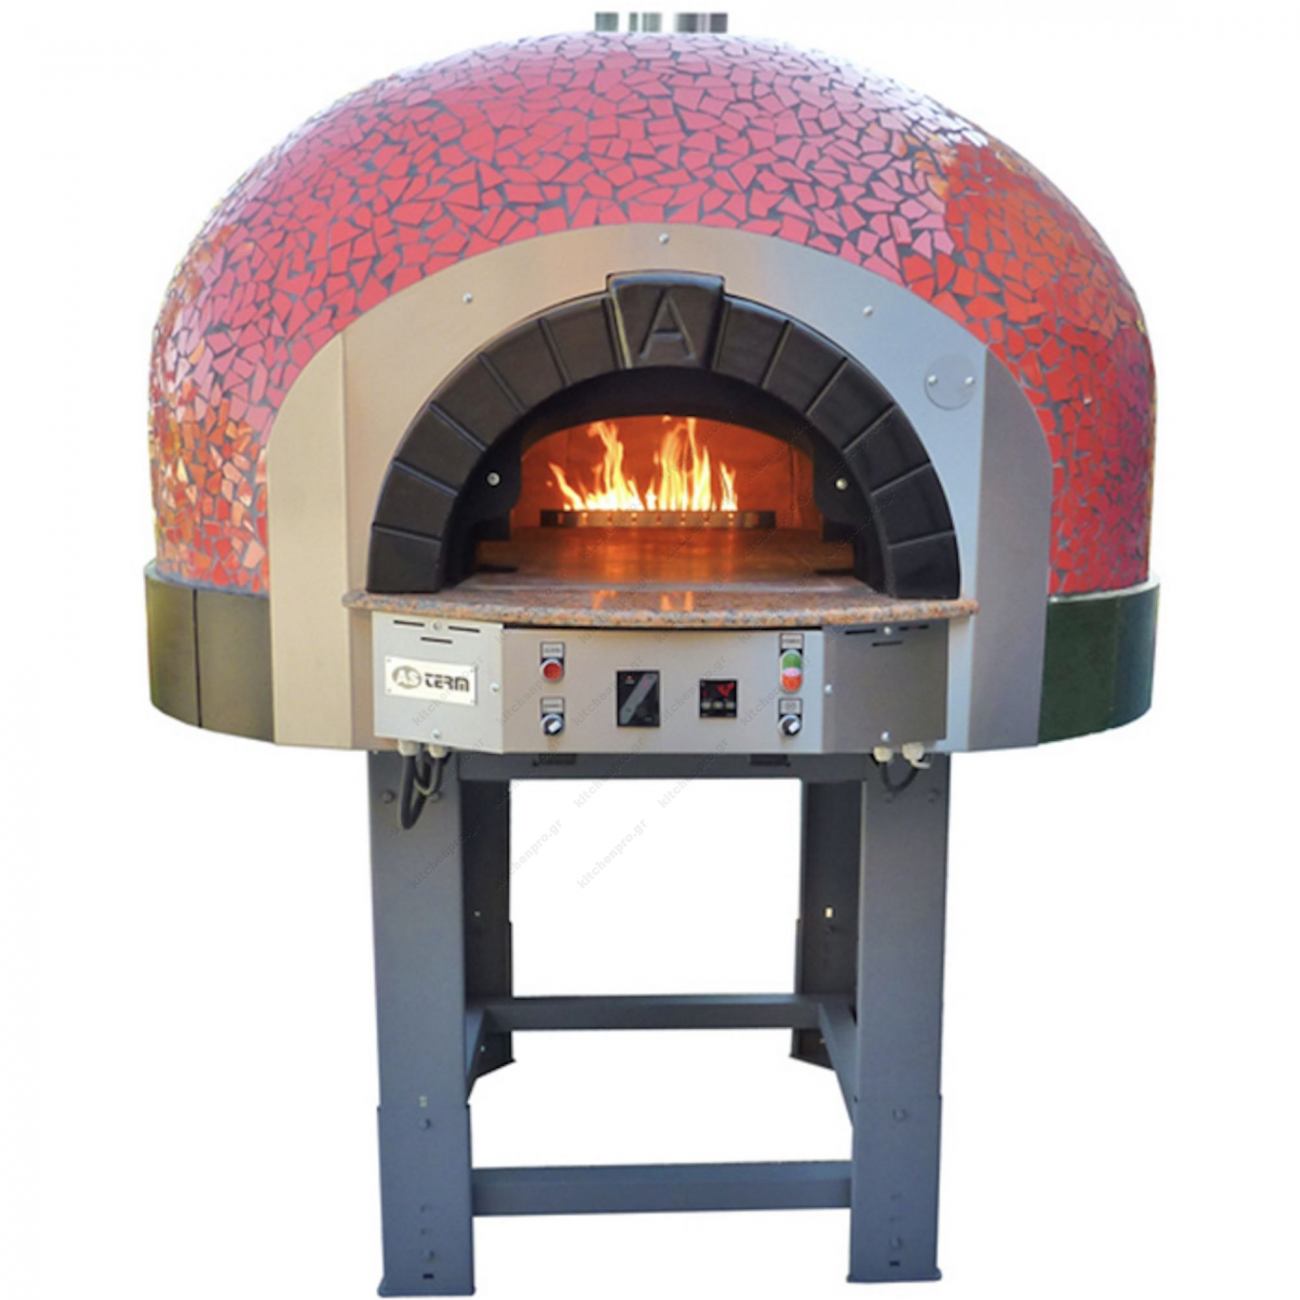 Купить печь на газу. Печь для пиццы as term d100k Mosaic. Газовая помпейская печь. Помпейская дровяная печь для пиццы. Печь для пиццы роторная 120.